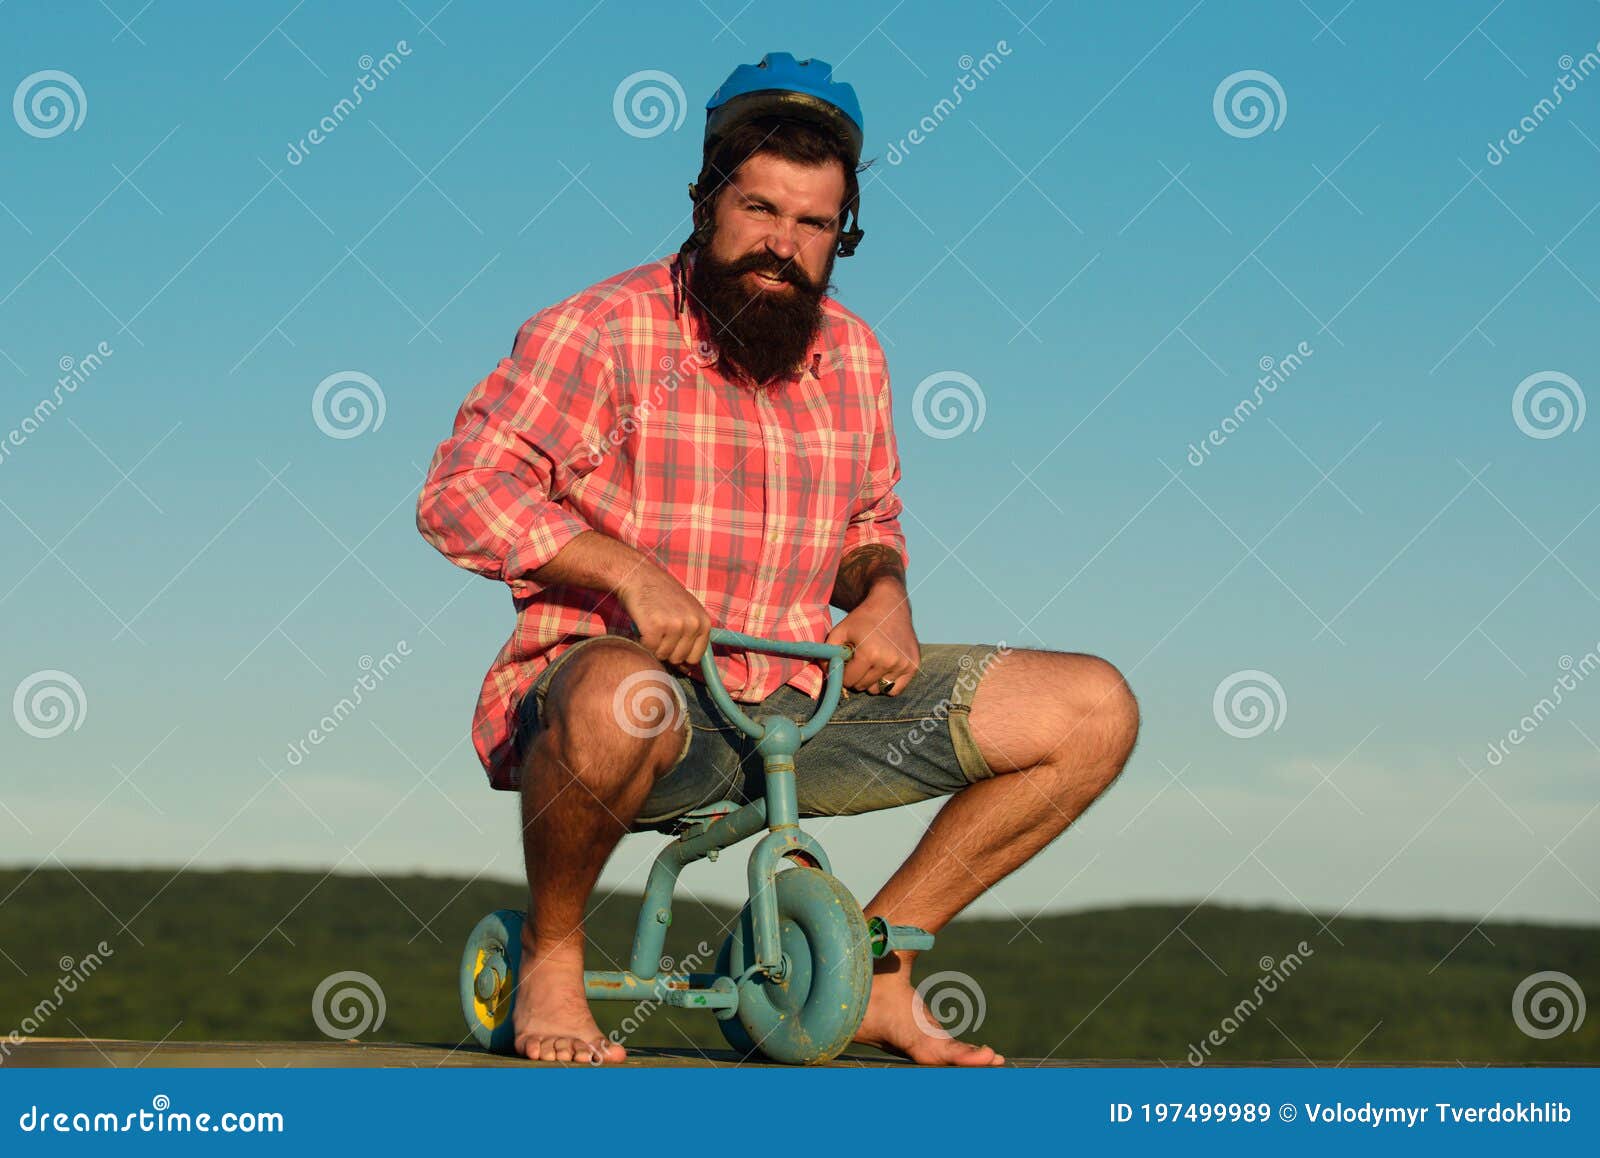 Hombre Adulto Nerdy Andar En Bicicleta Pequeña Aislado En Blanco Fotos,  retratos, imágenes y fotografía de archivo libres de derecho. Image 34564652